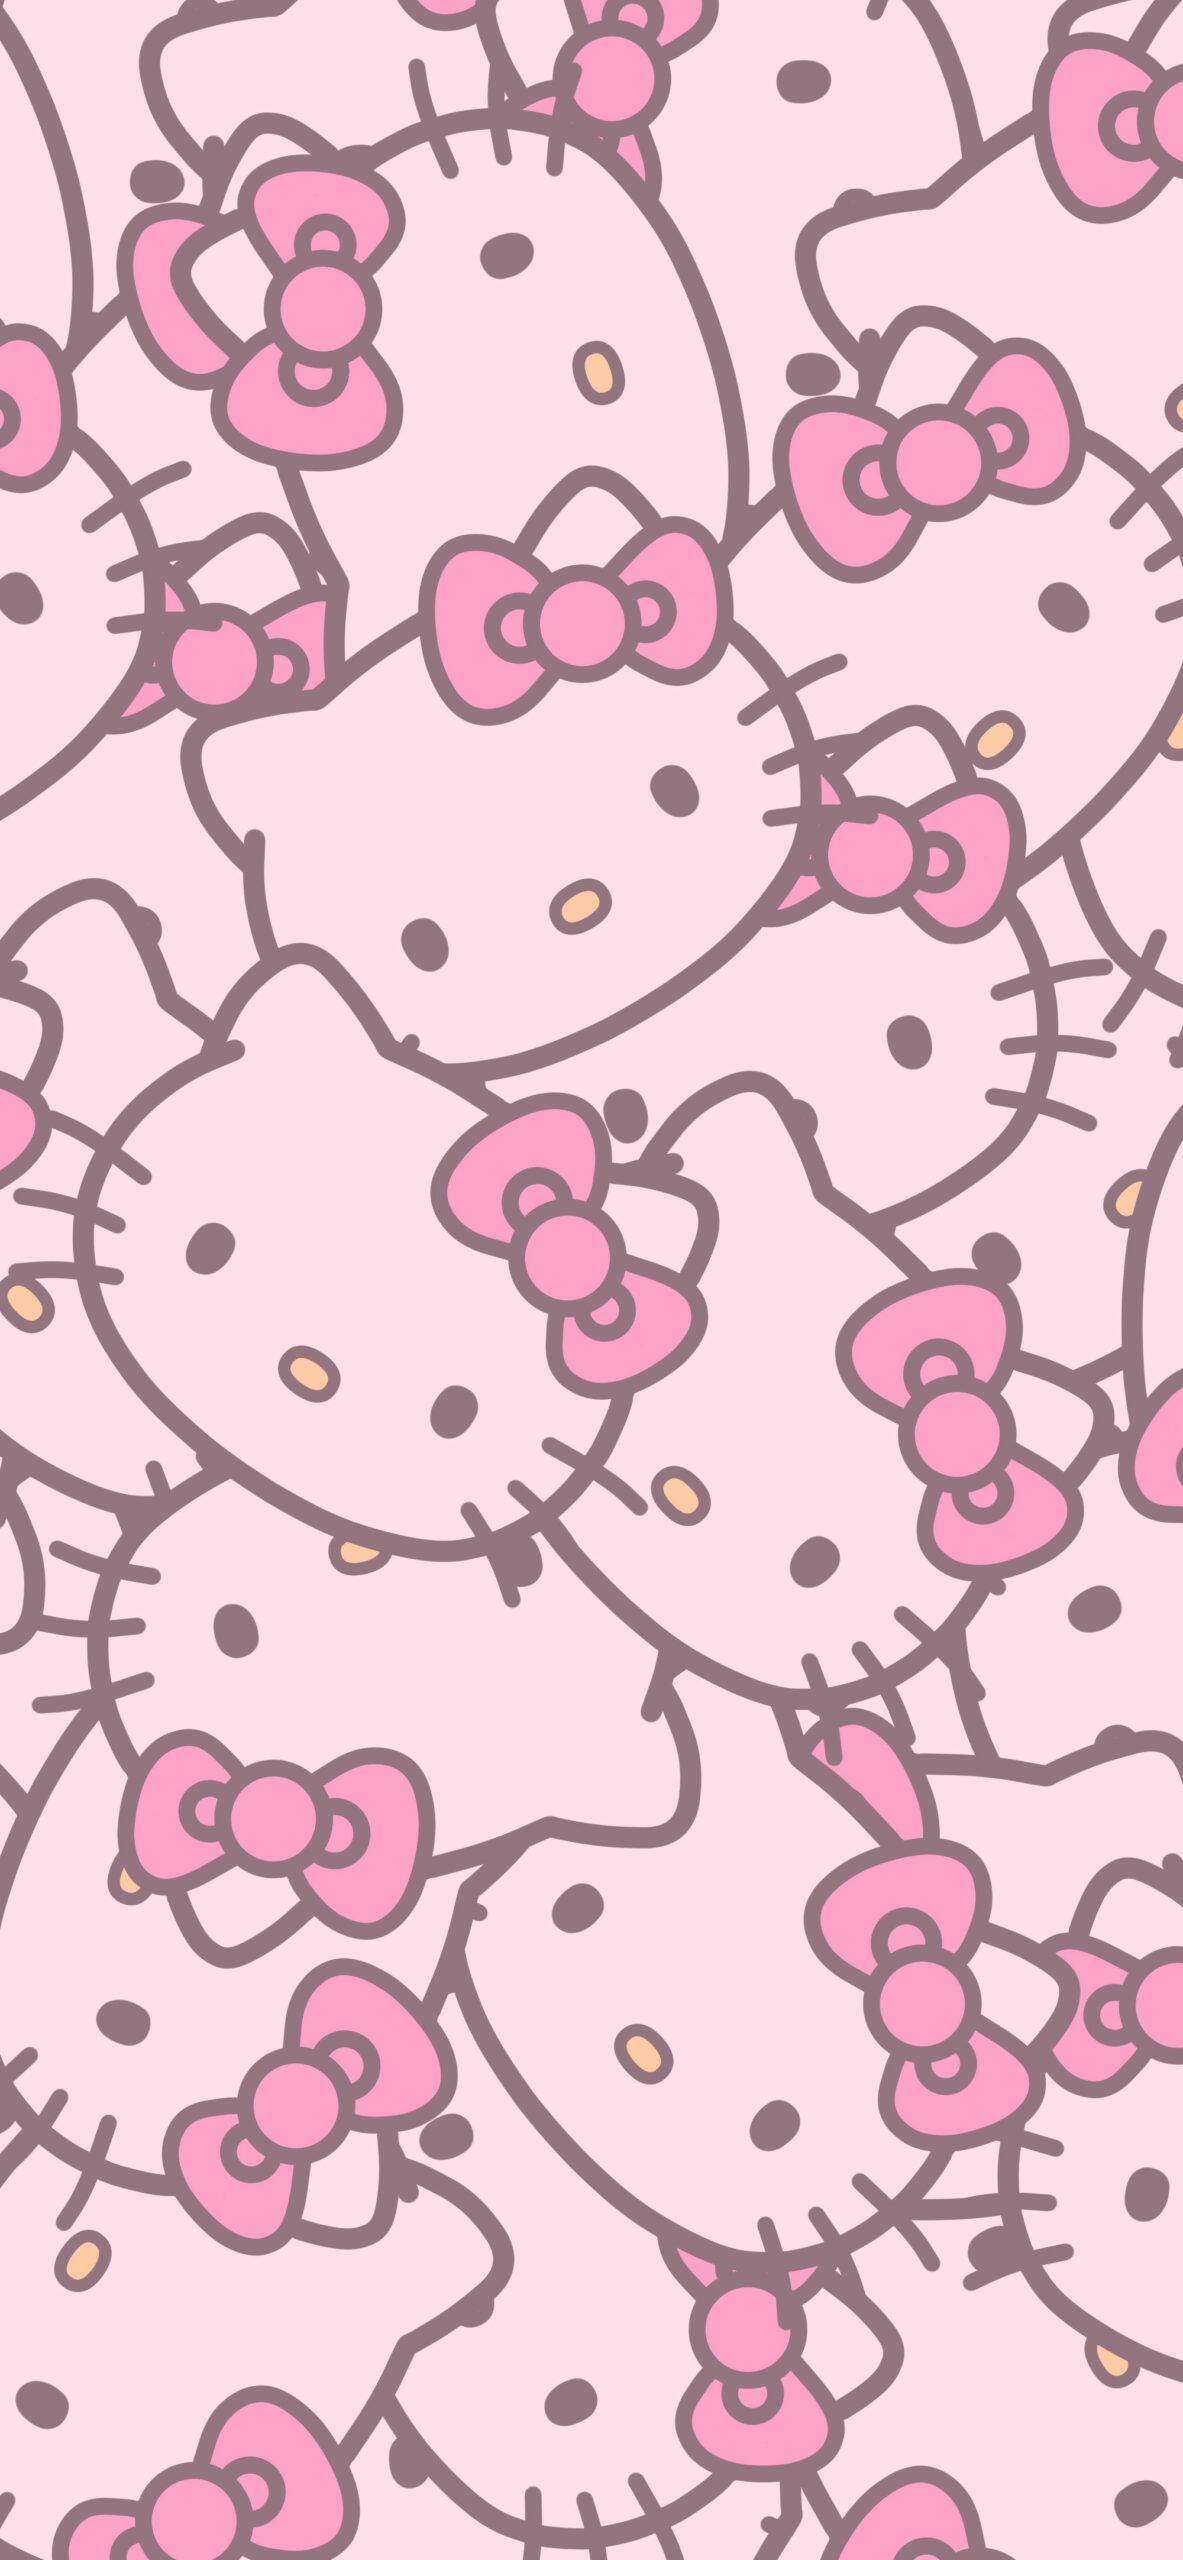 Free Hello Kitty Preppy Wallpaper  Download in JPG  Templatenet